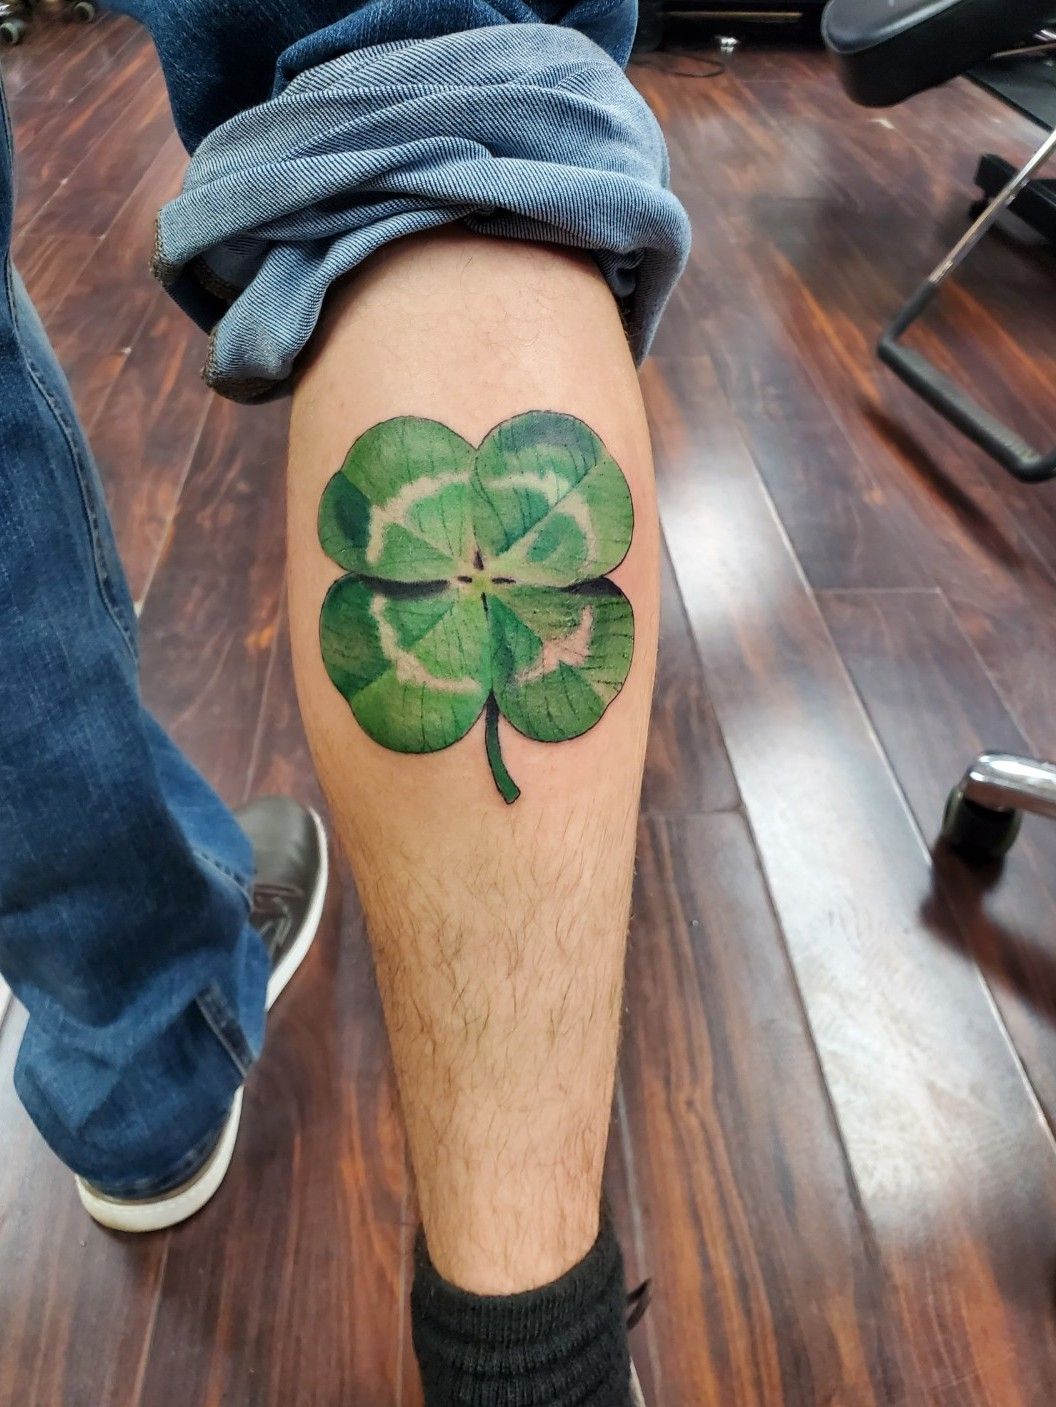 Got a 5 leaf clover tattoo lmk what ya think! : r/BlackClover